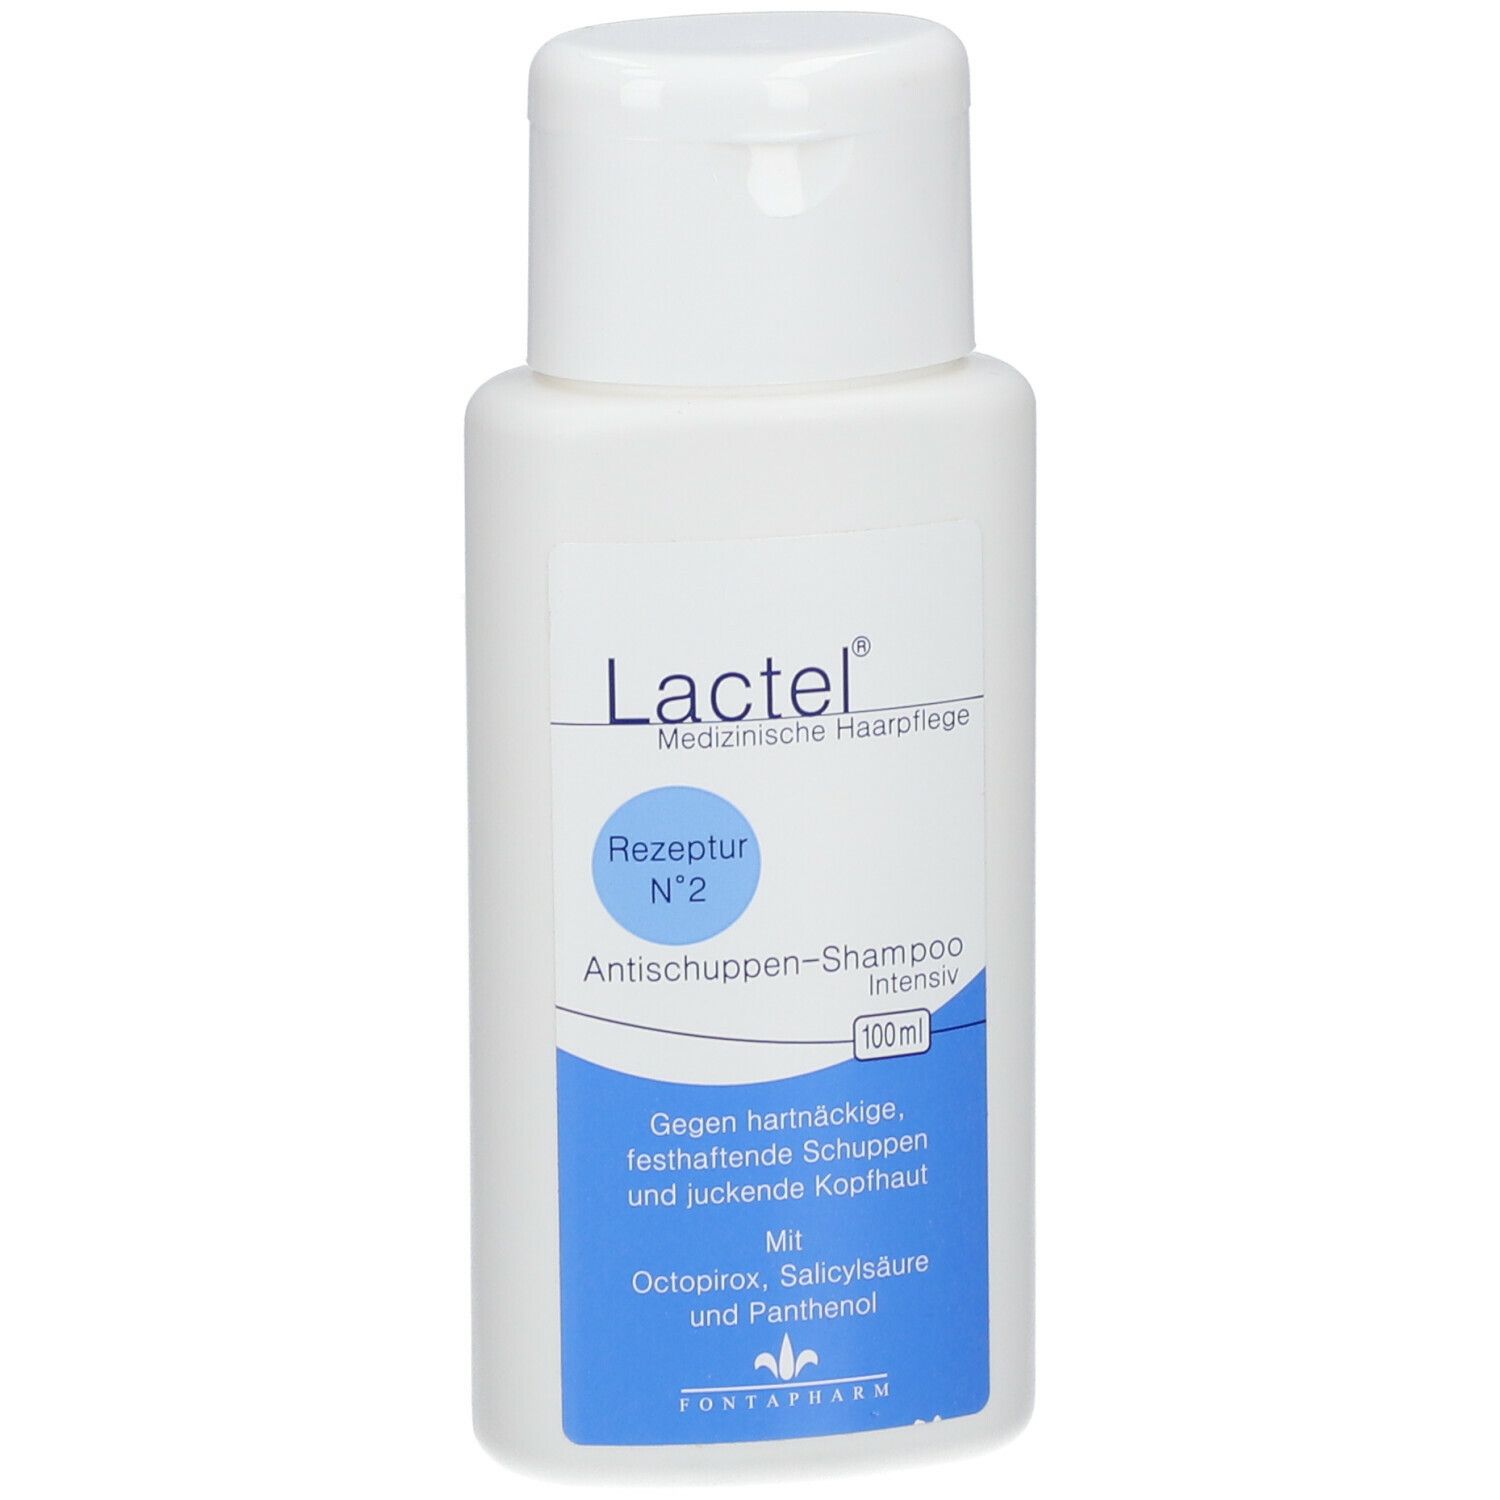 Lactel® Nr. 2 Antischuppen-Shampoo Intensiv